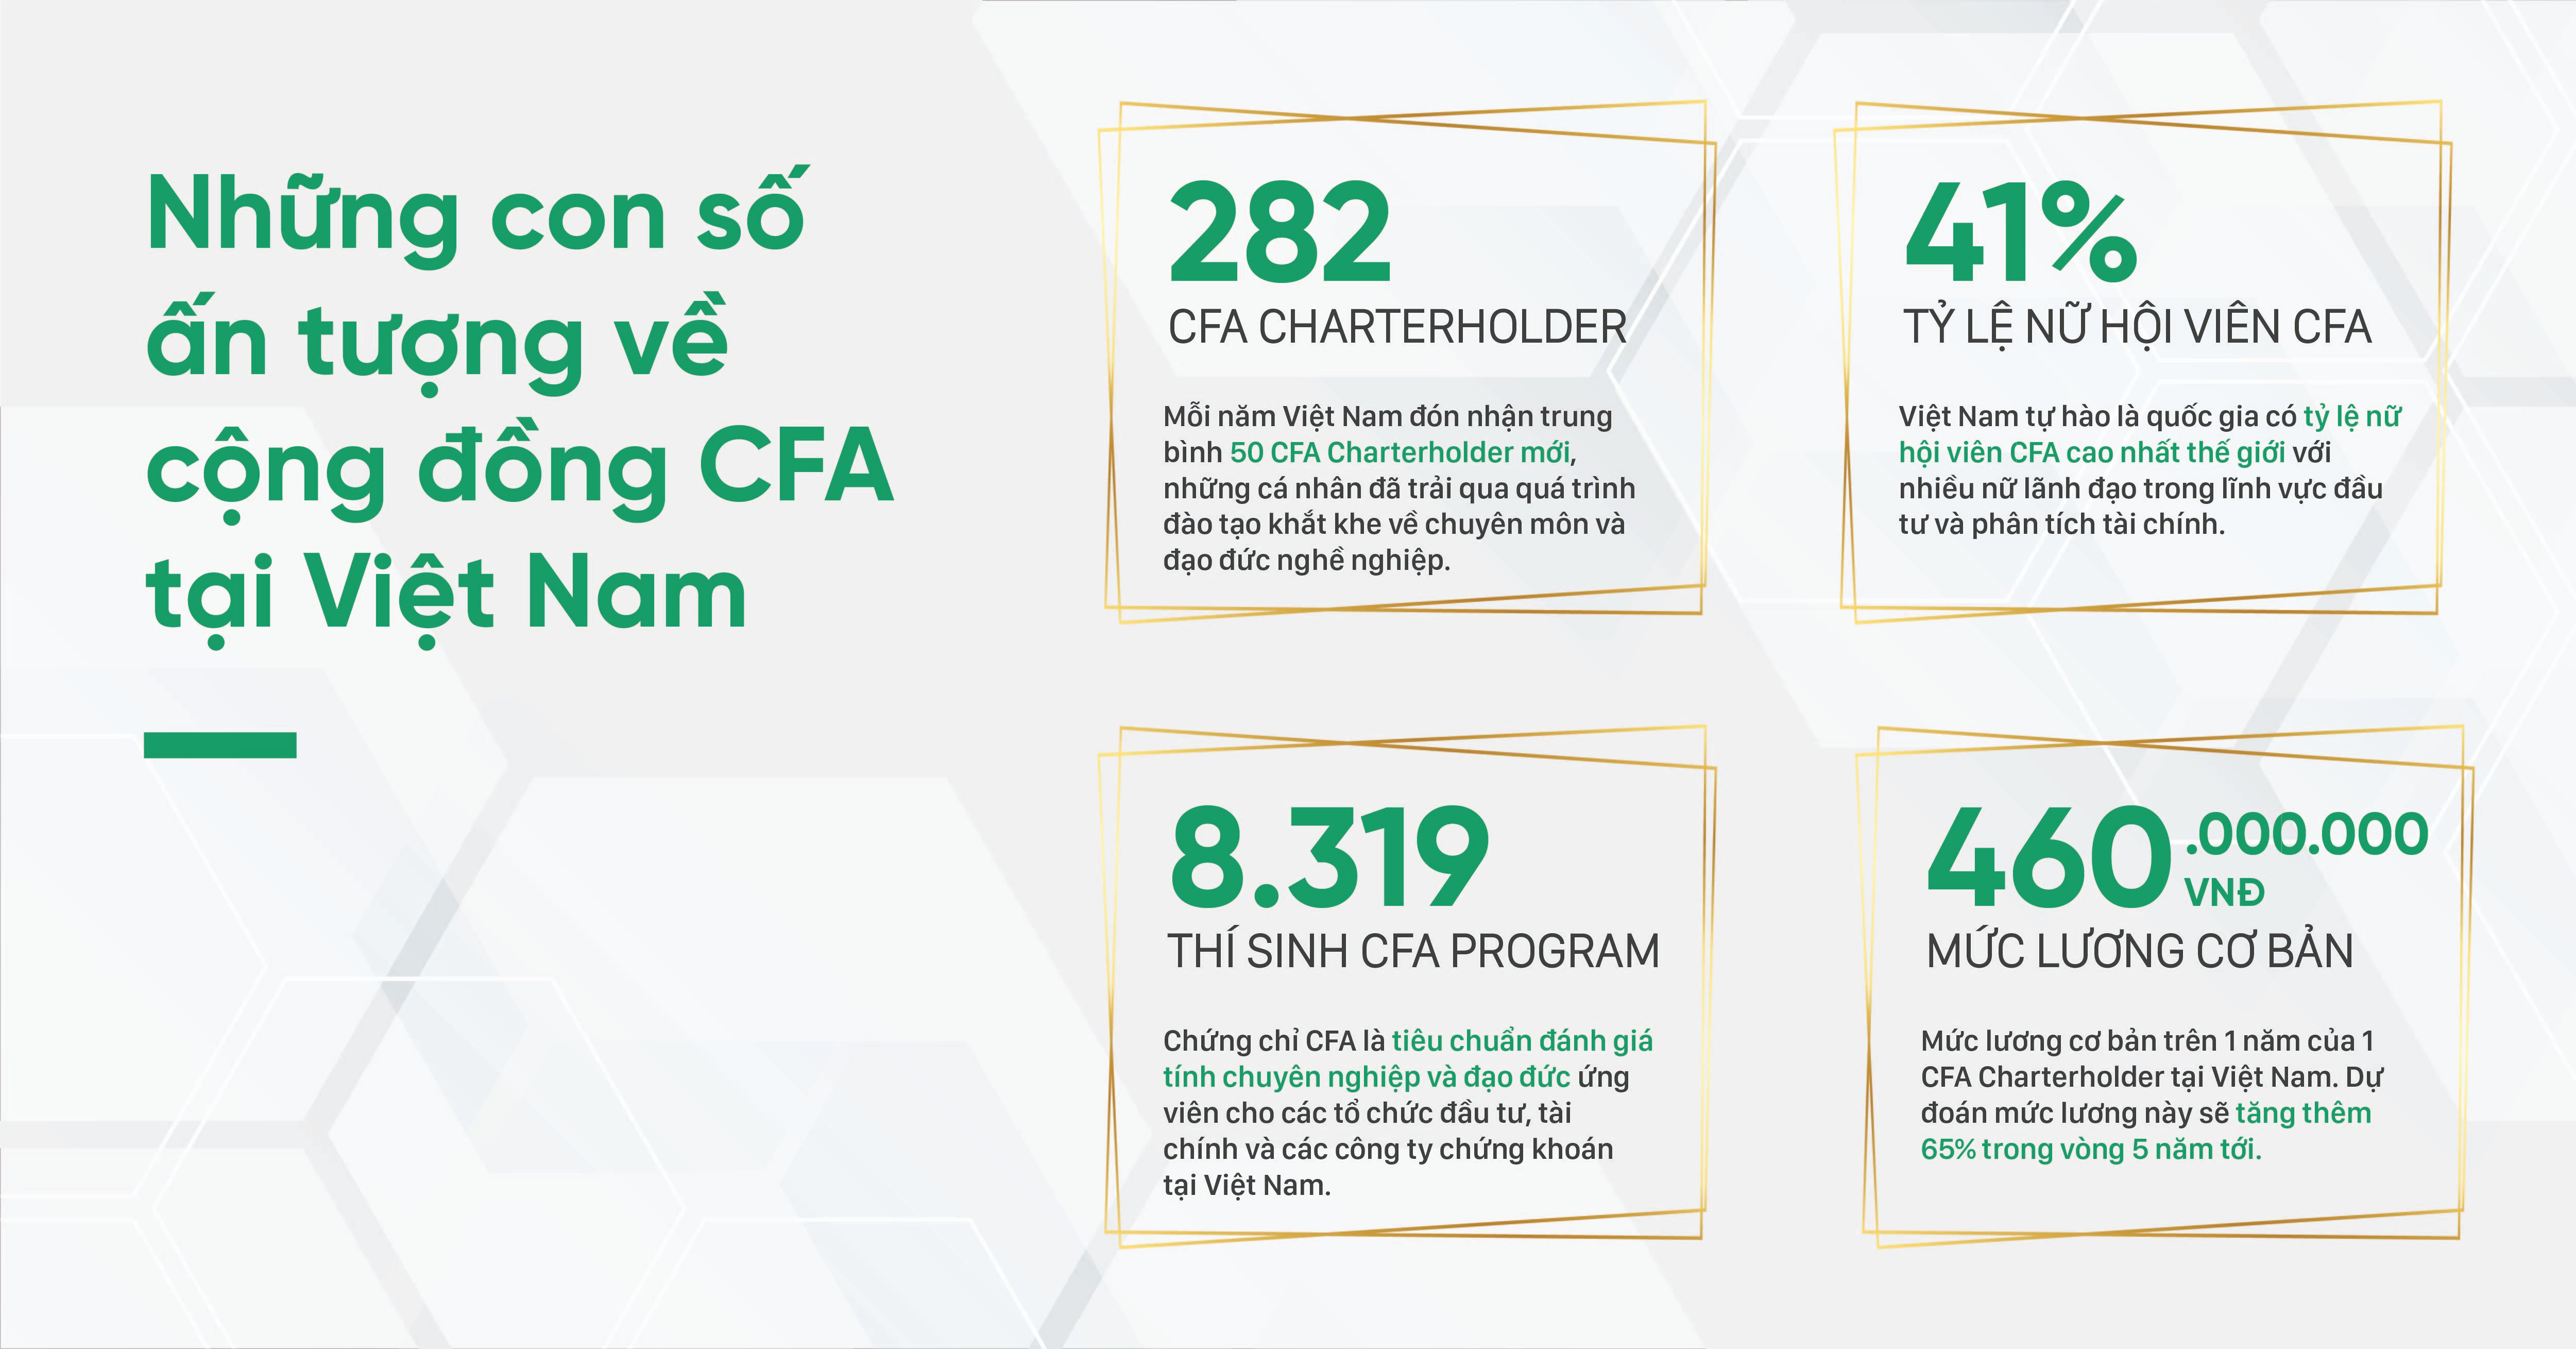 Ảnh 3: Những con số ấn tượng về cộng đồng CFA tại Việt Nam